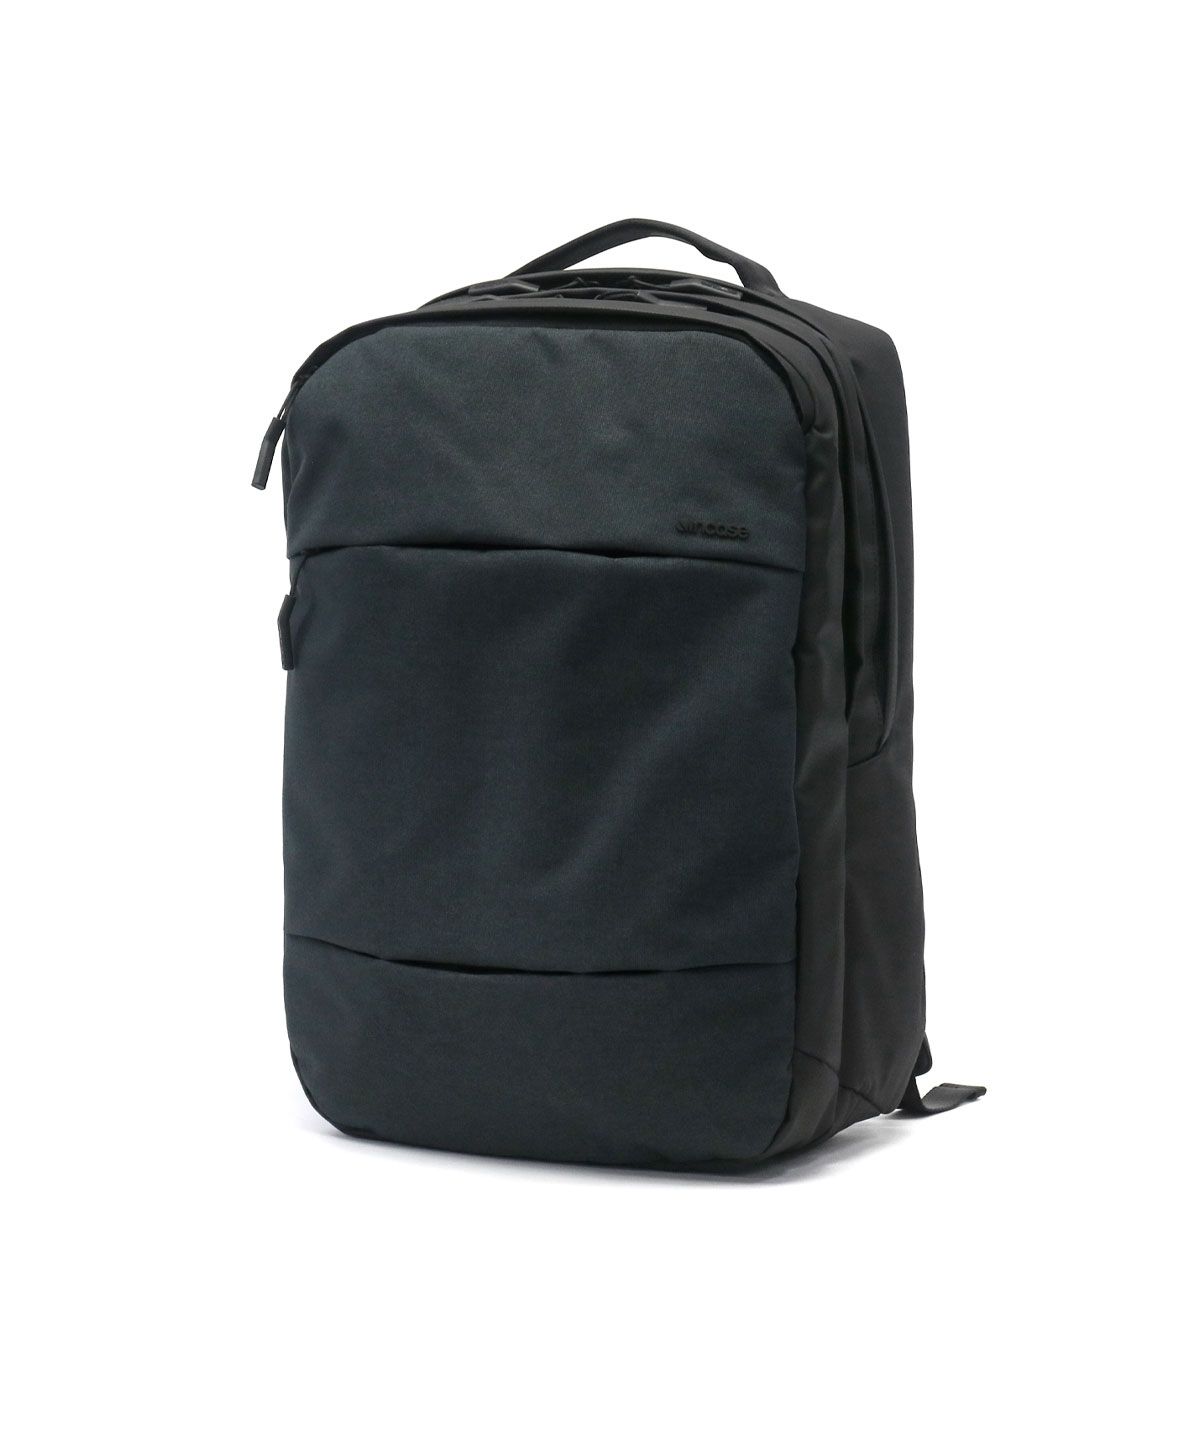 【日本正規品】インケース リュック Incase バックパック City Backpack シティバックパック 21L A4 B4 2層 ビジネスバッグ